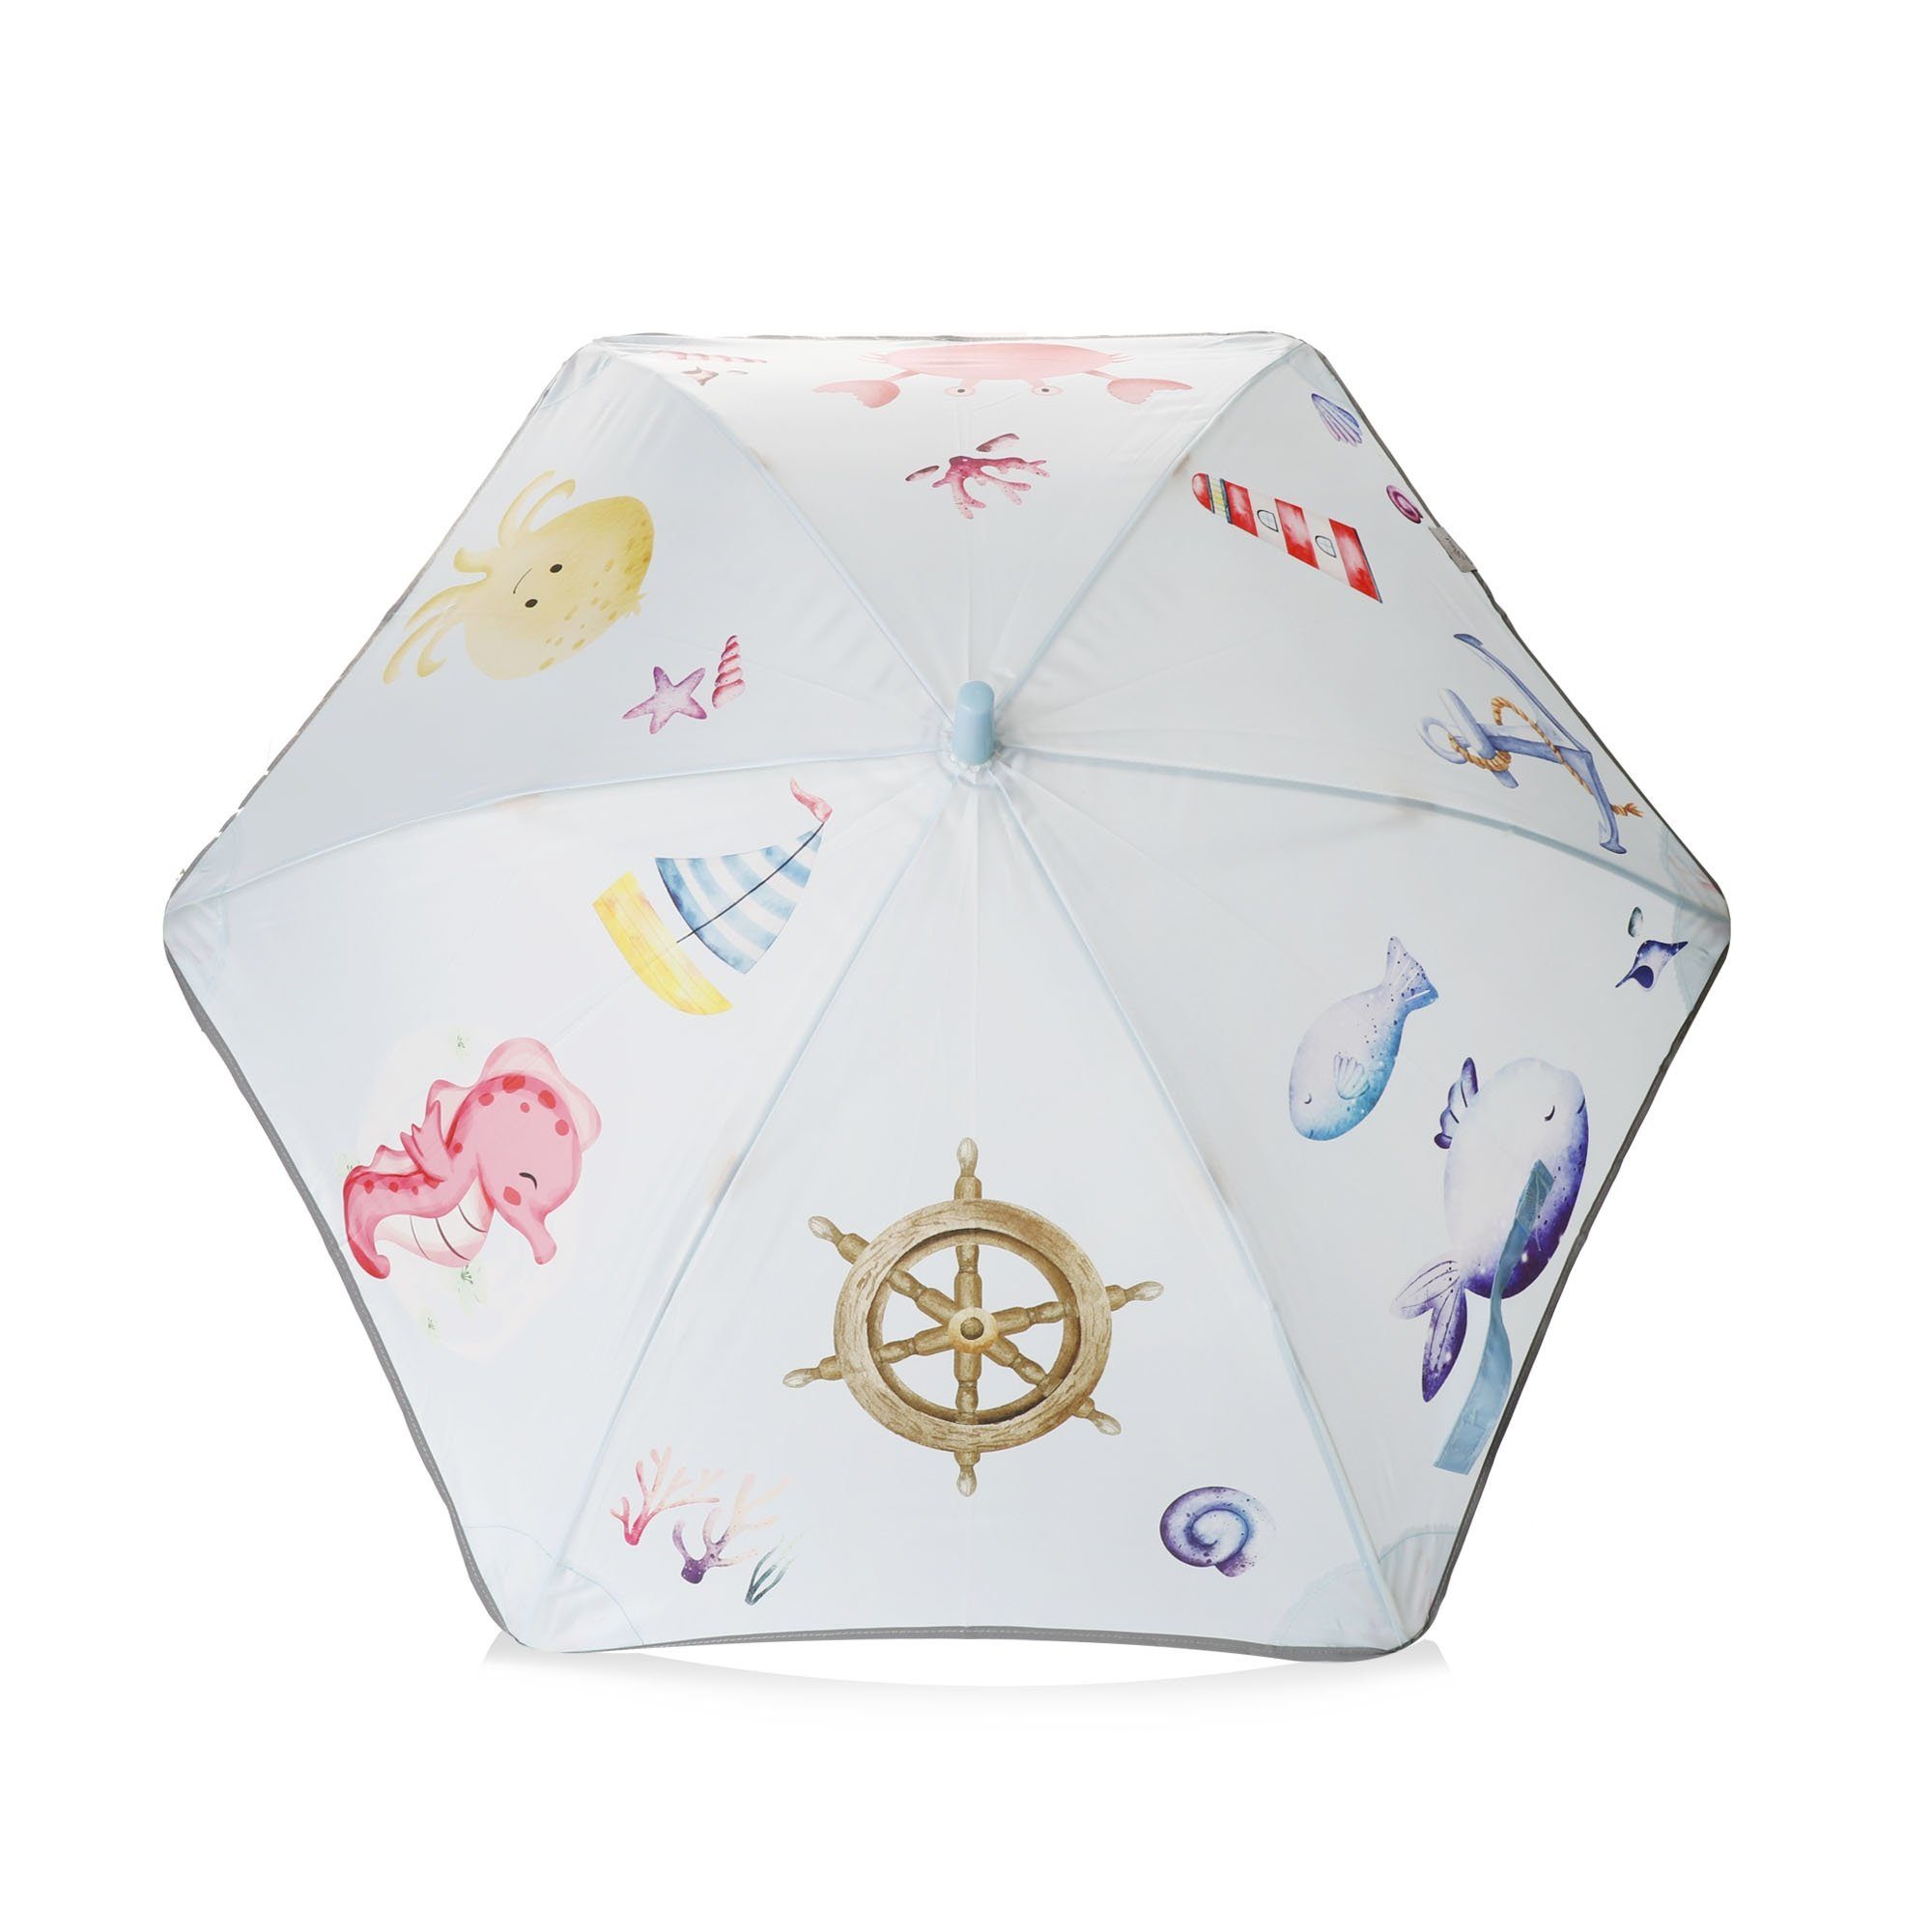 Sonia Originelli Taschenregenschirm Kinder Regenschirm reflektierend maritim Fische Krabbe Leuchtturm